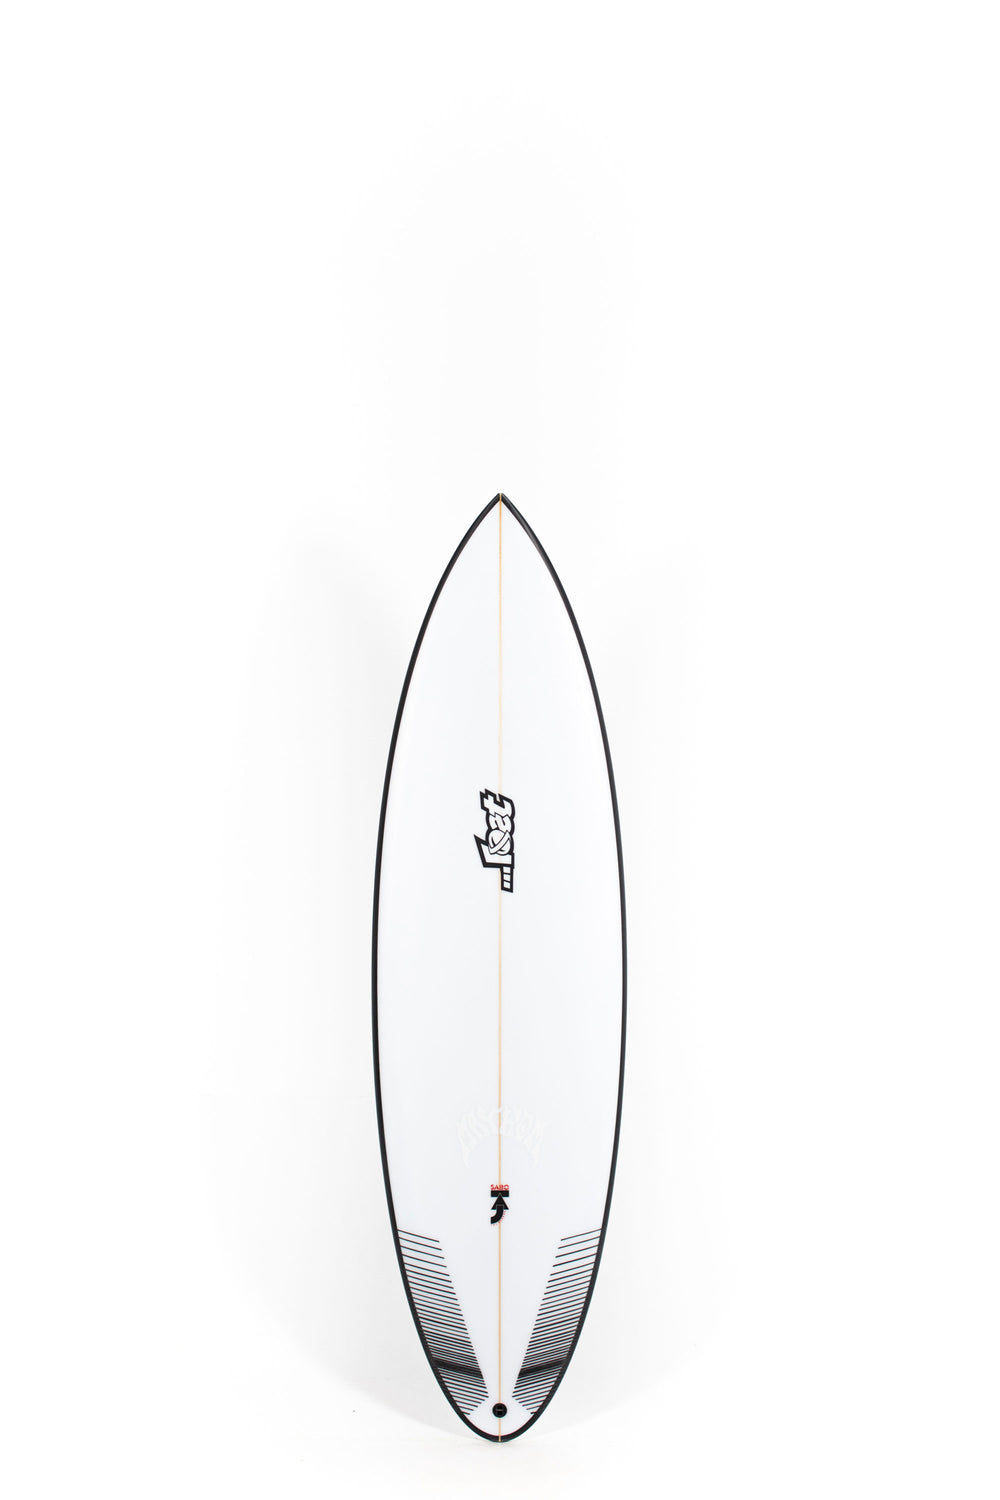 Pukas Surf Shop - Lost Surfboard - SABO TAJ by Matt Biolos - 5’9” x 18,75 x 2,38 x 28L - MH16064